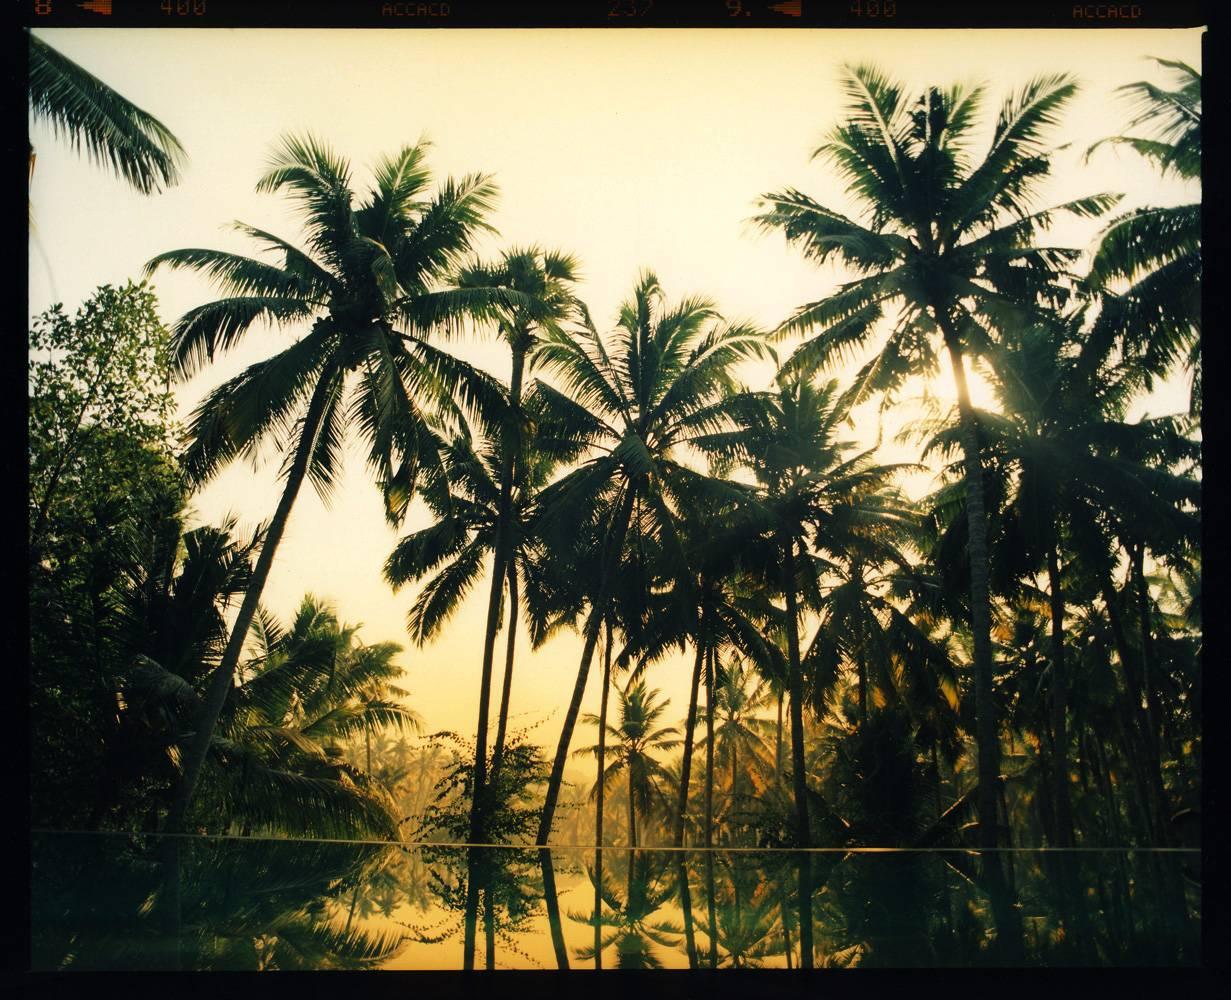 Color Photograph Richard Heeps - Pool Vetyver, Poovar, Kerala - Photographie couleur indienne de palmier tropical